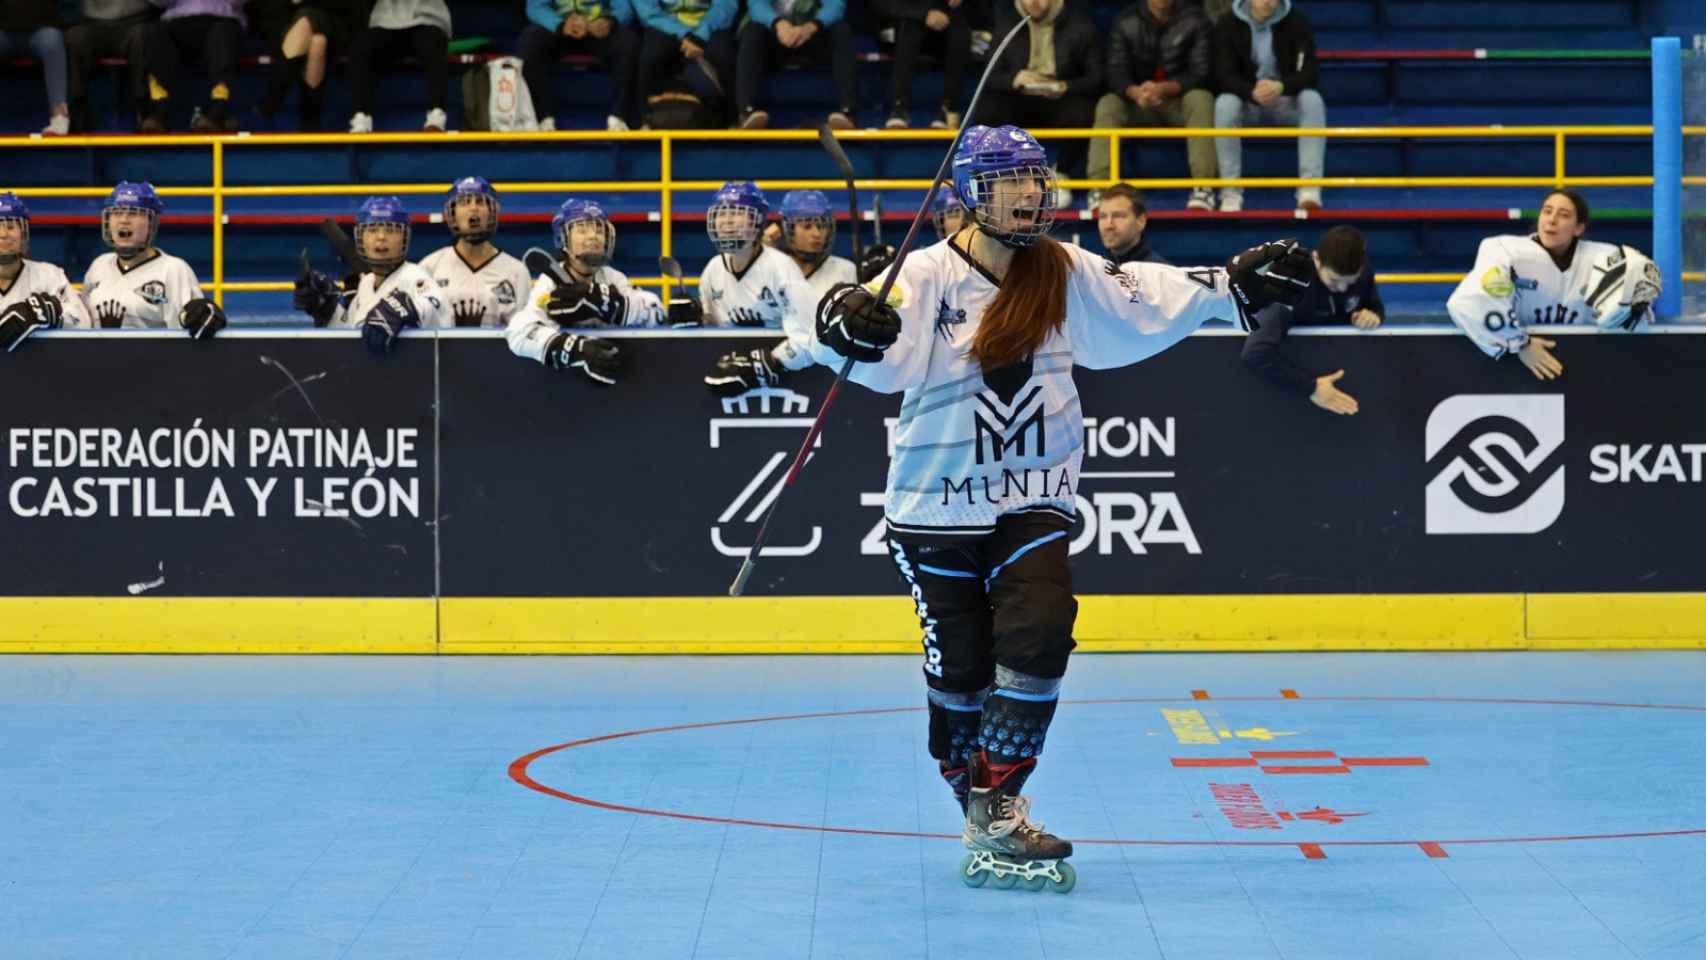 Munia Panteras en la Copa de hockey en línea en Zamora